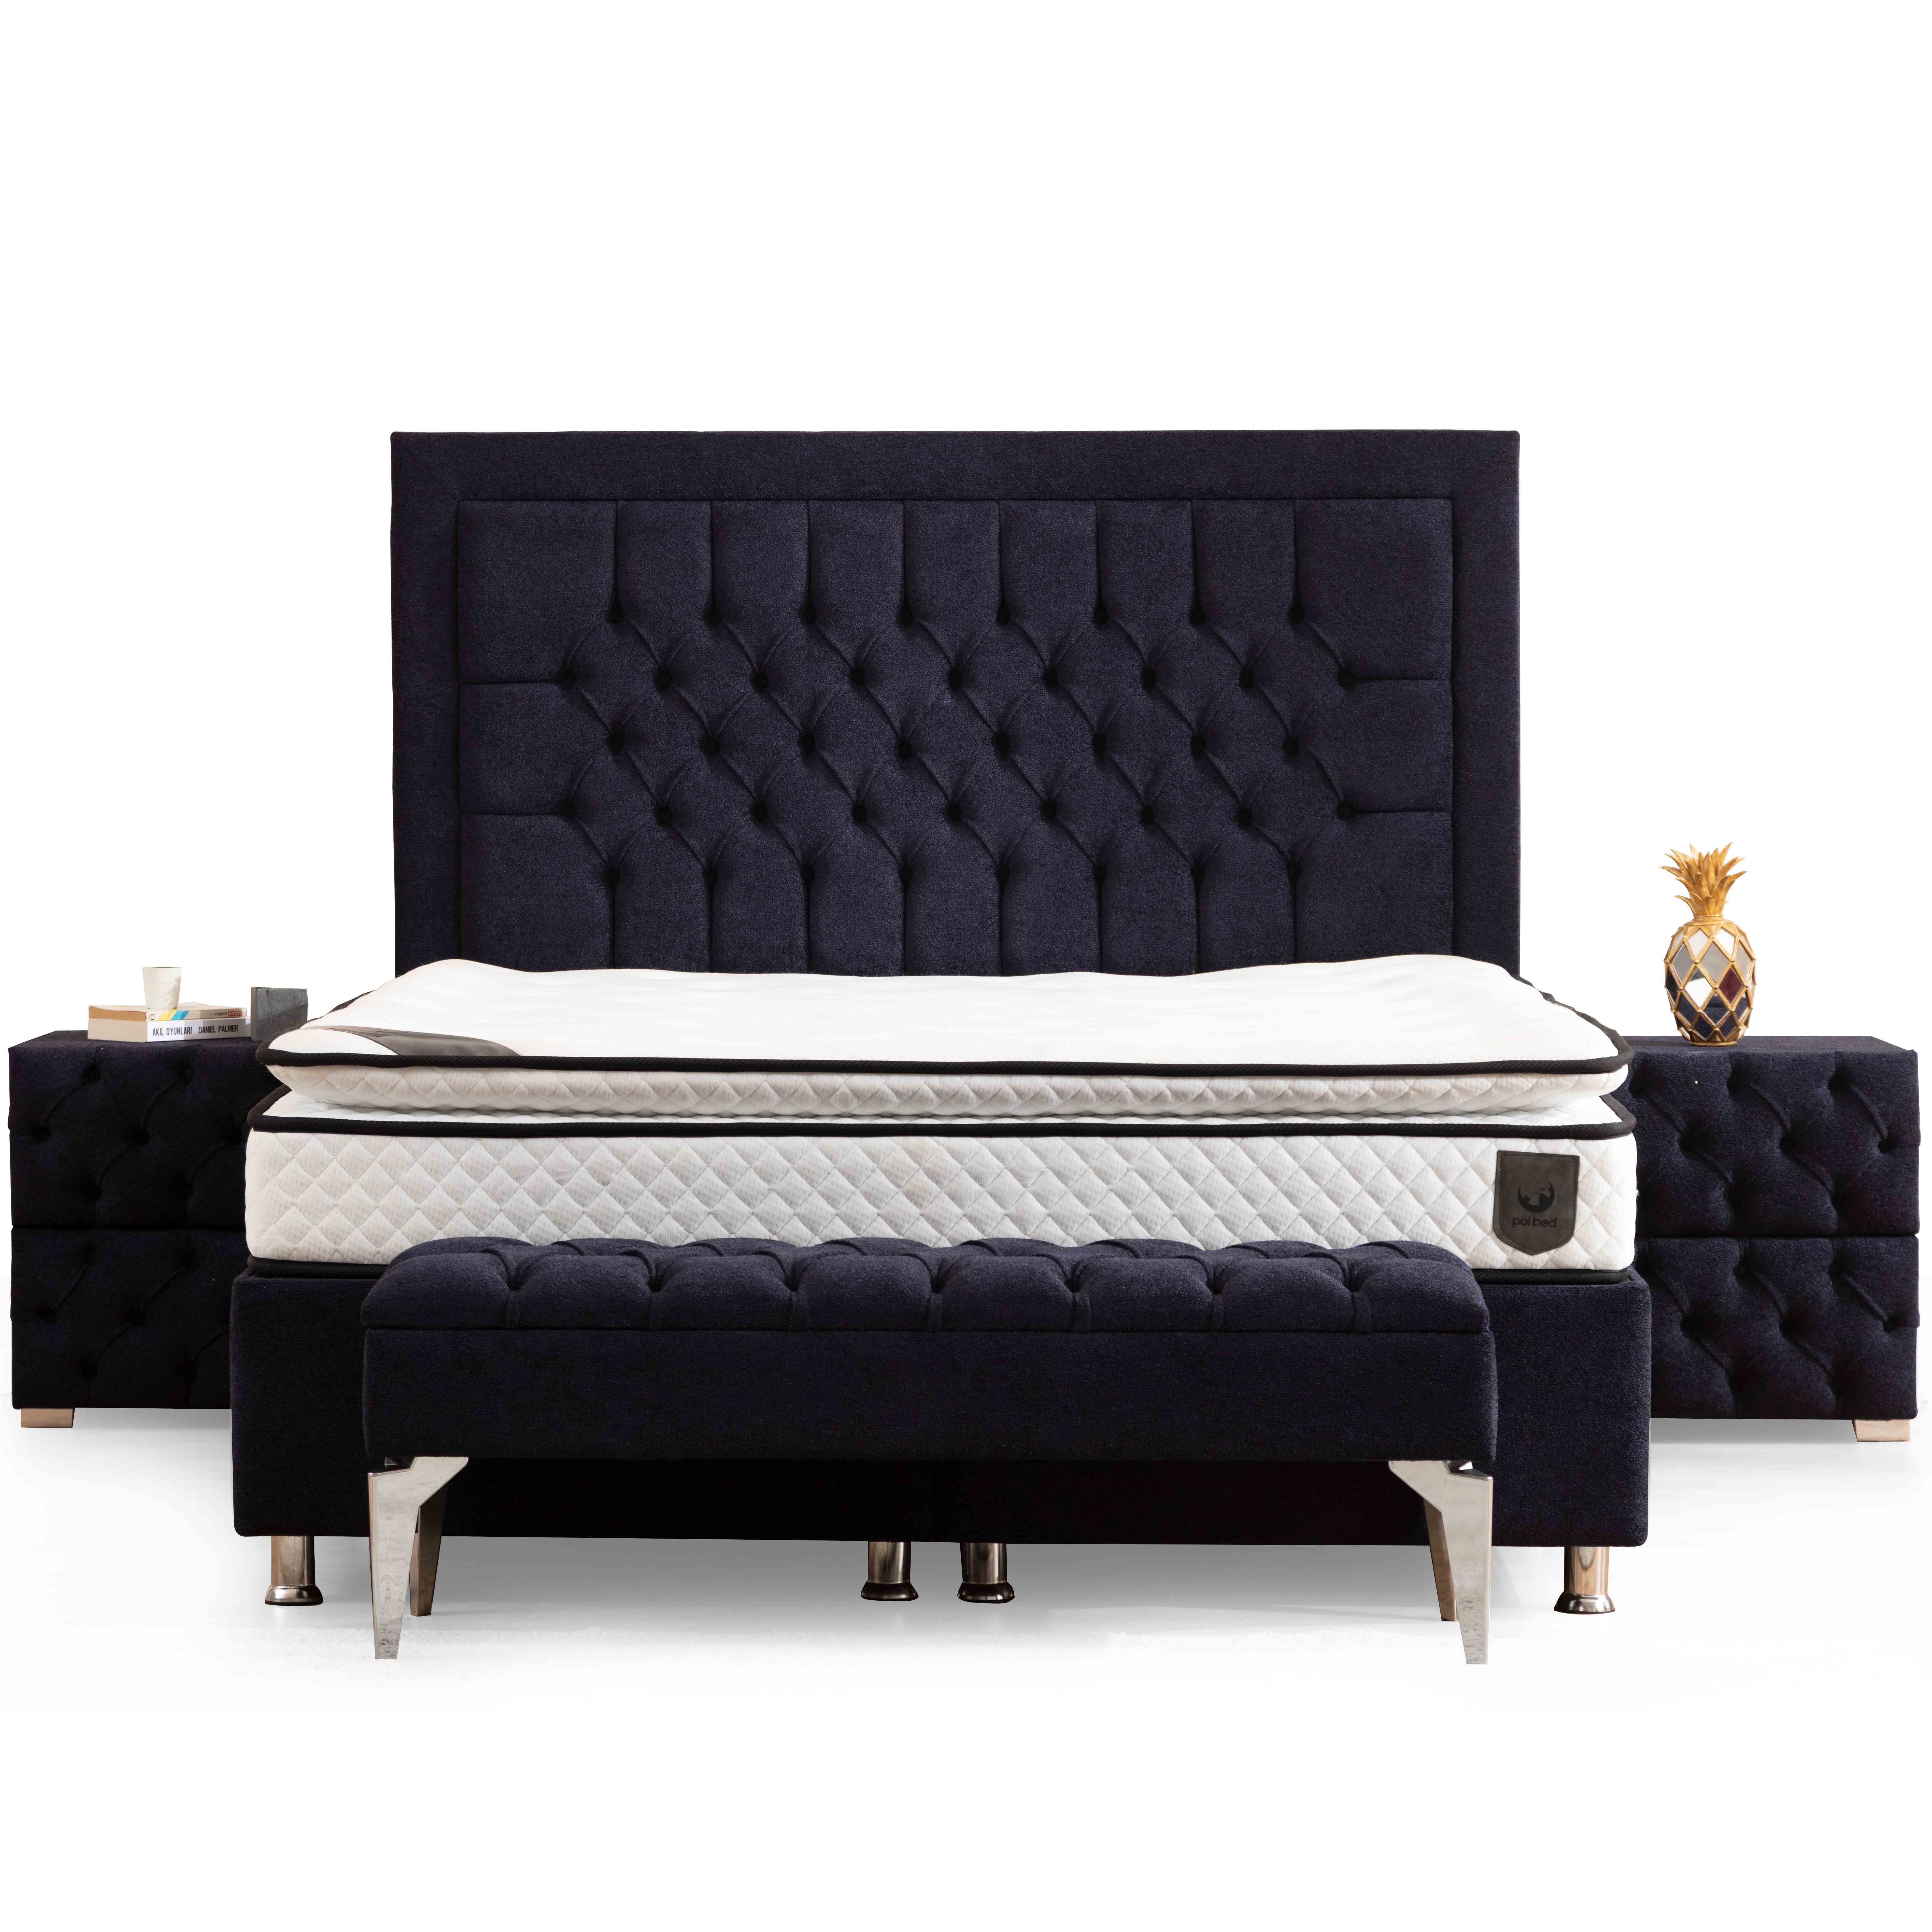 Astom Bed With Storage 180x200 cm